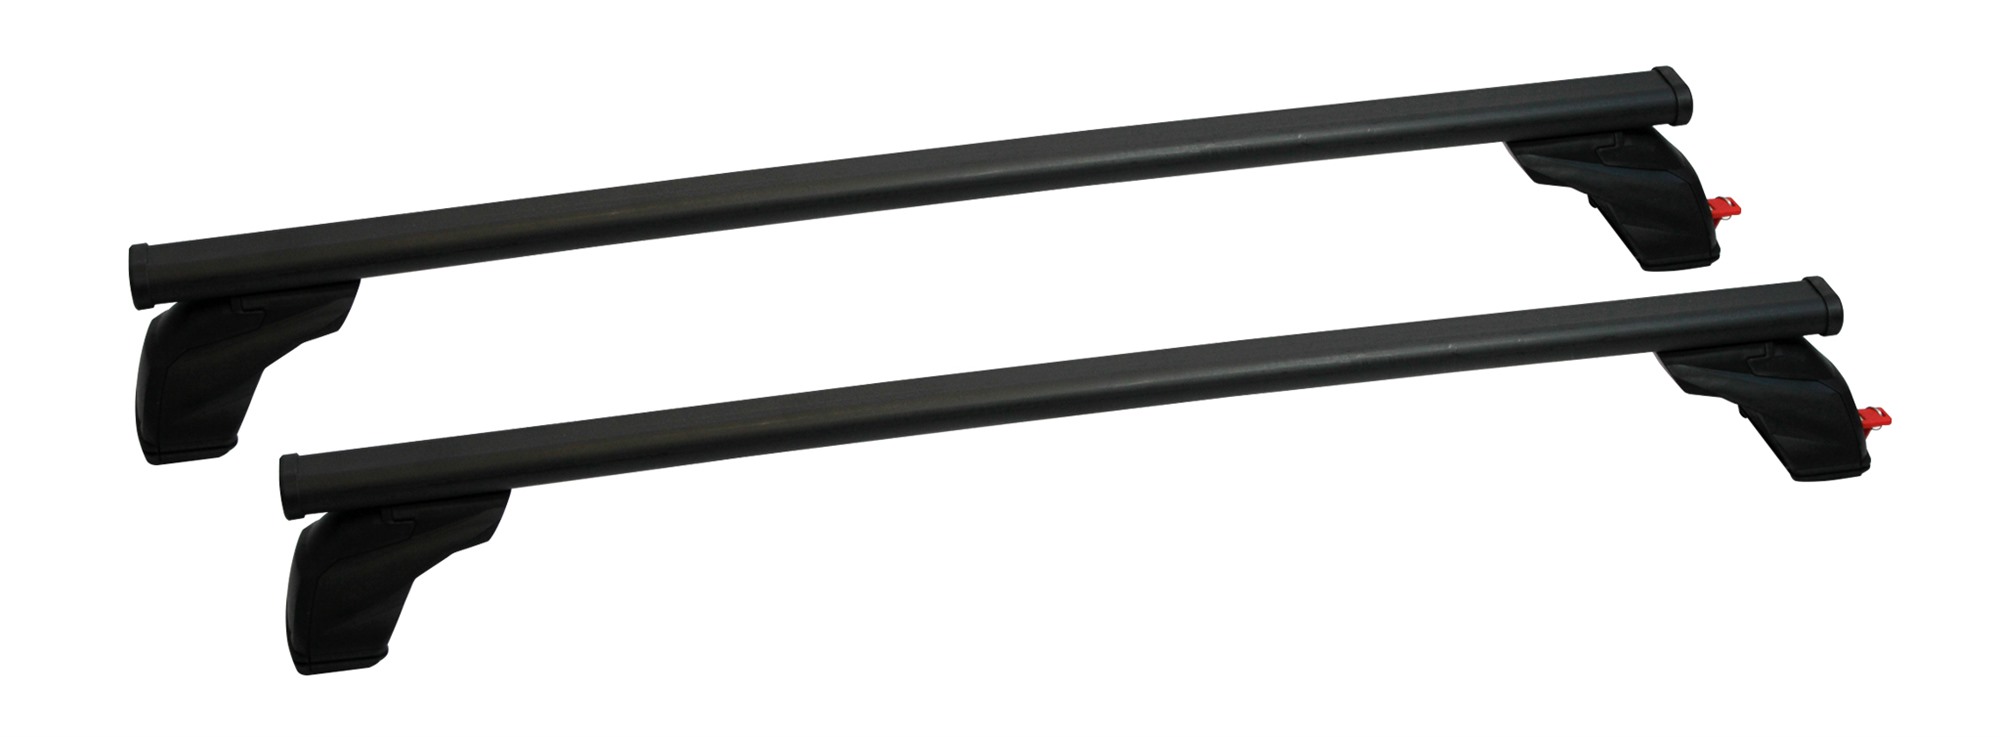 Σετ Μπάρες Οροφής Σιδερένιες με τα πόδια 127εκ για VW Golf 6 3D 2008-2012 2τμχ Pacific G3